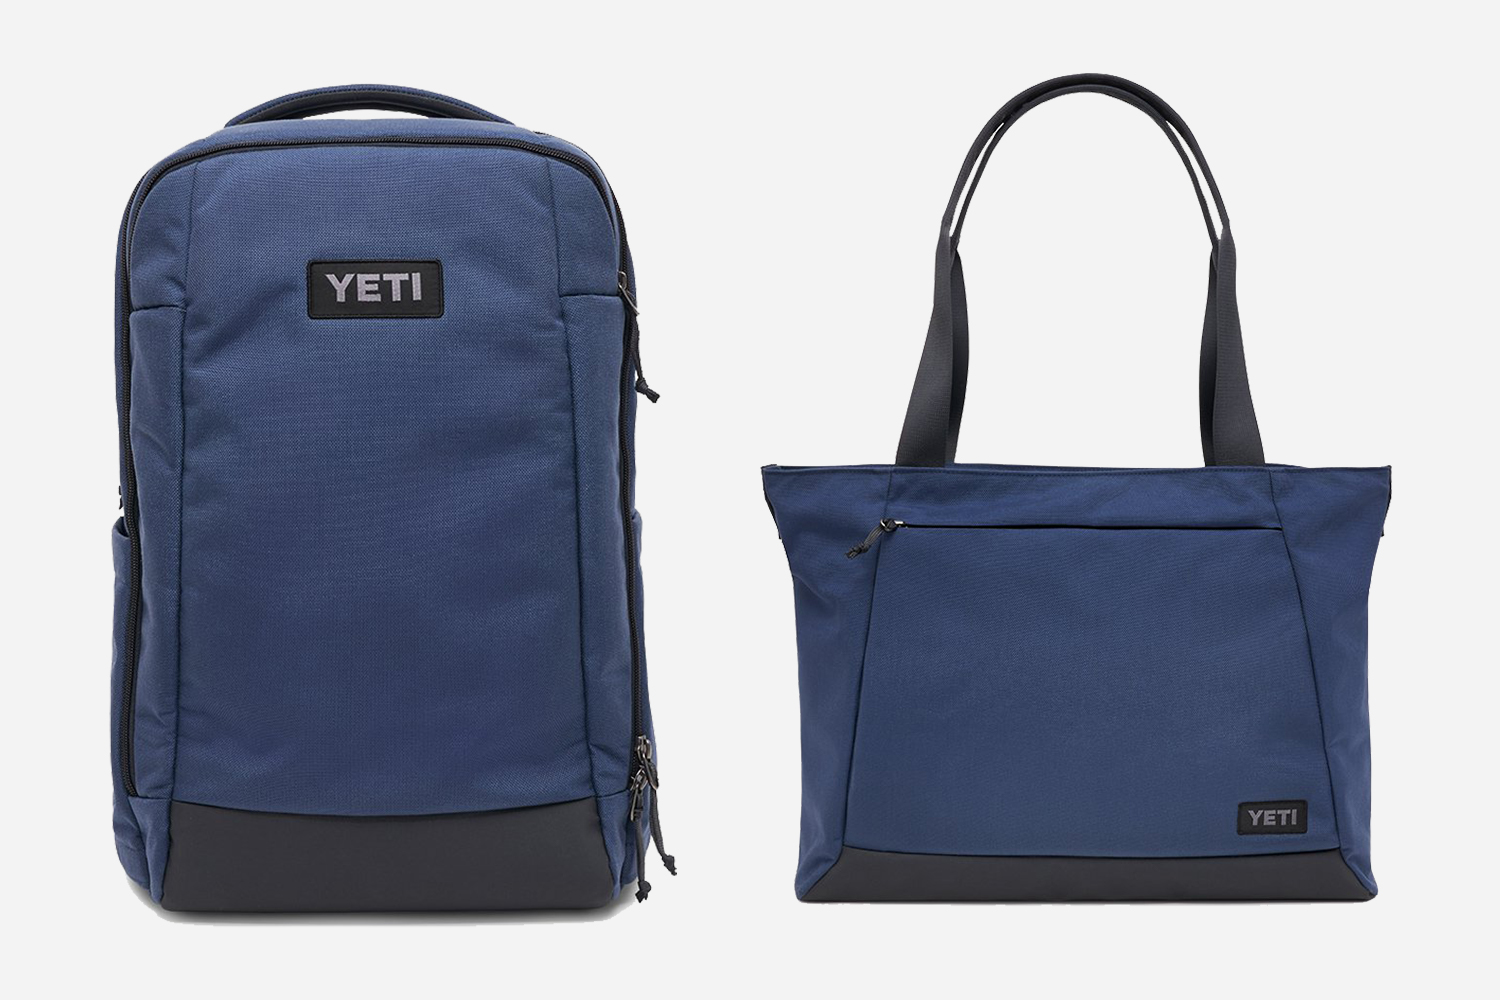 Yeti Crossroads Backpack 23 - Slate Blue